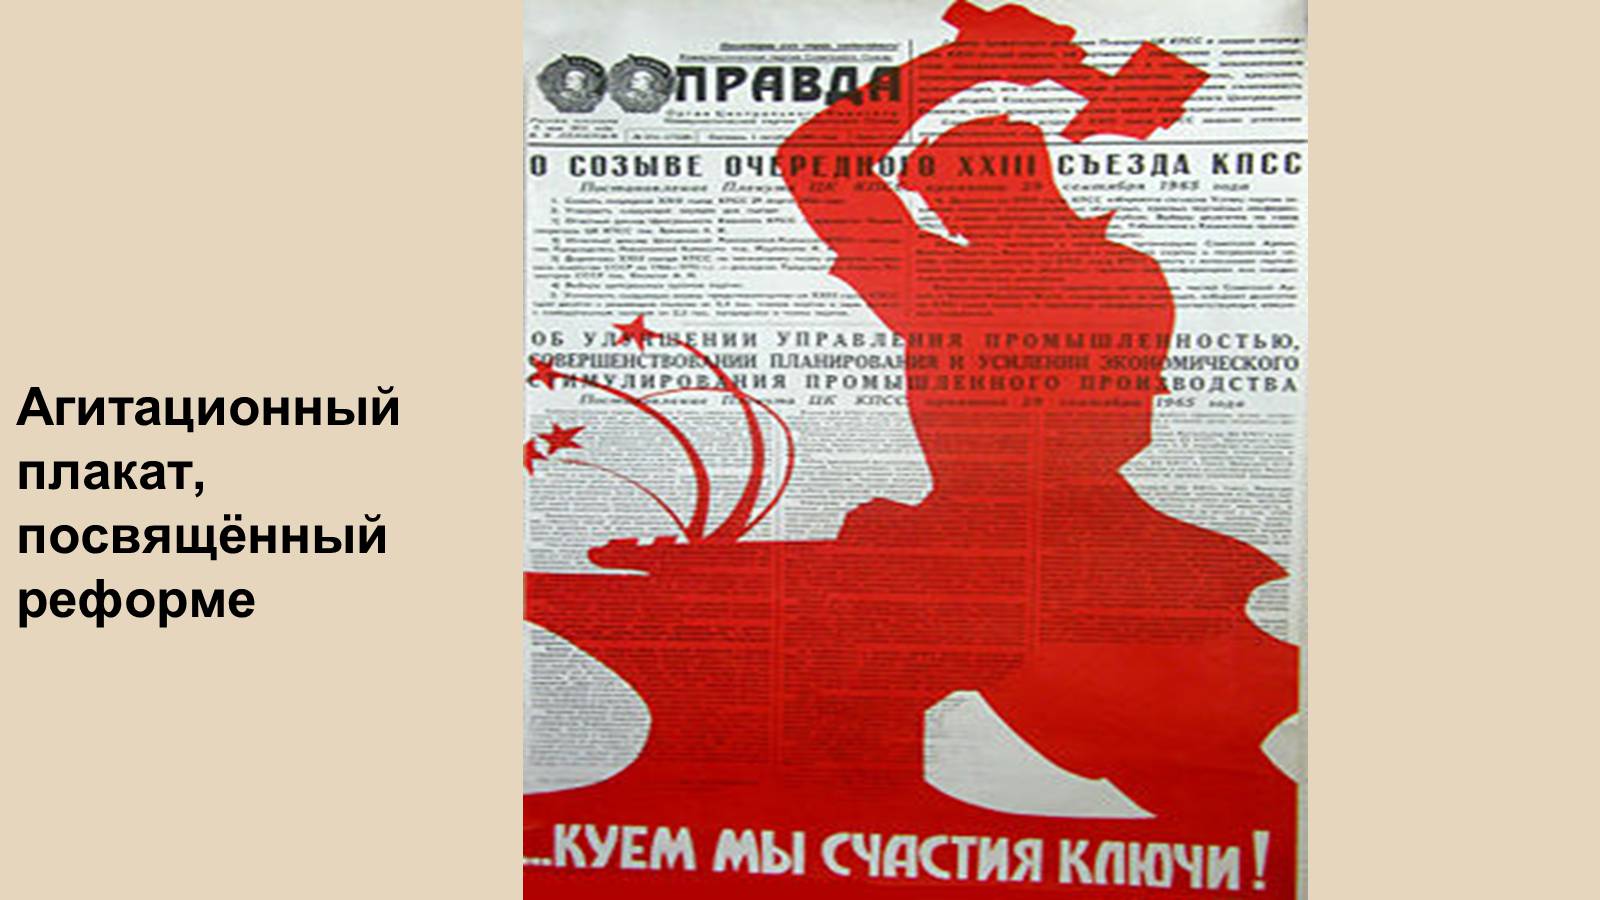 За сколько заканчивается агитация. Советские плакаты. Косыгинская реформа плакаты. Реформа Косыгина плакат. Косыгинская реформа Советский плакат.